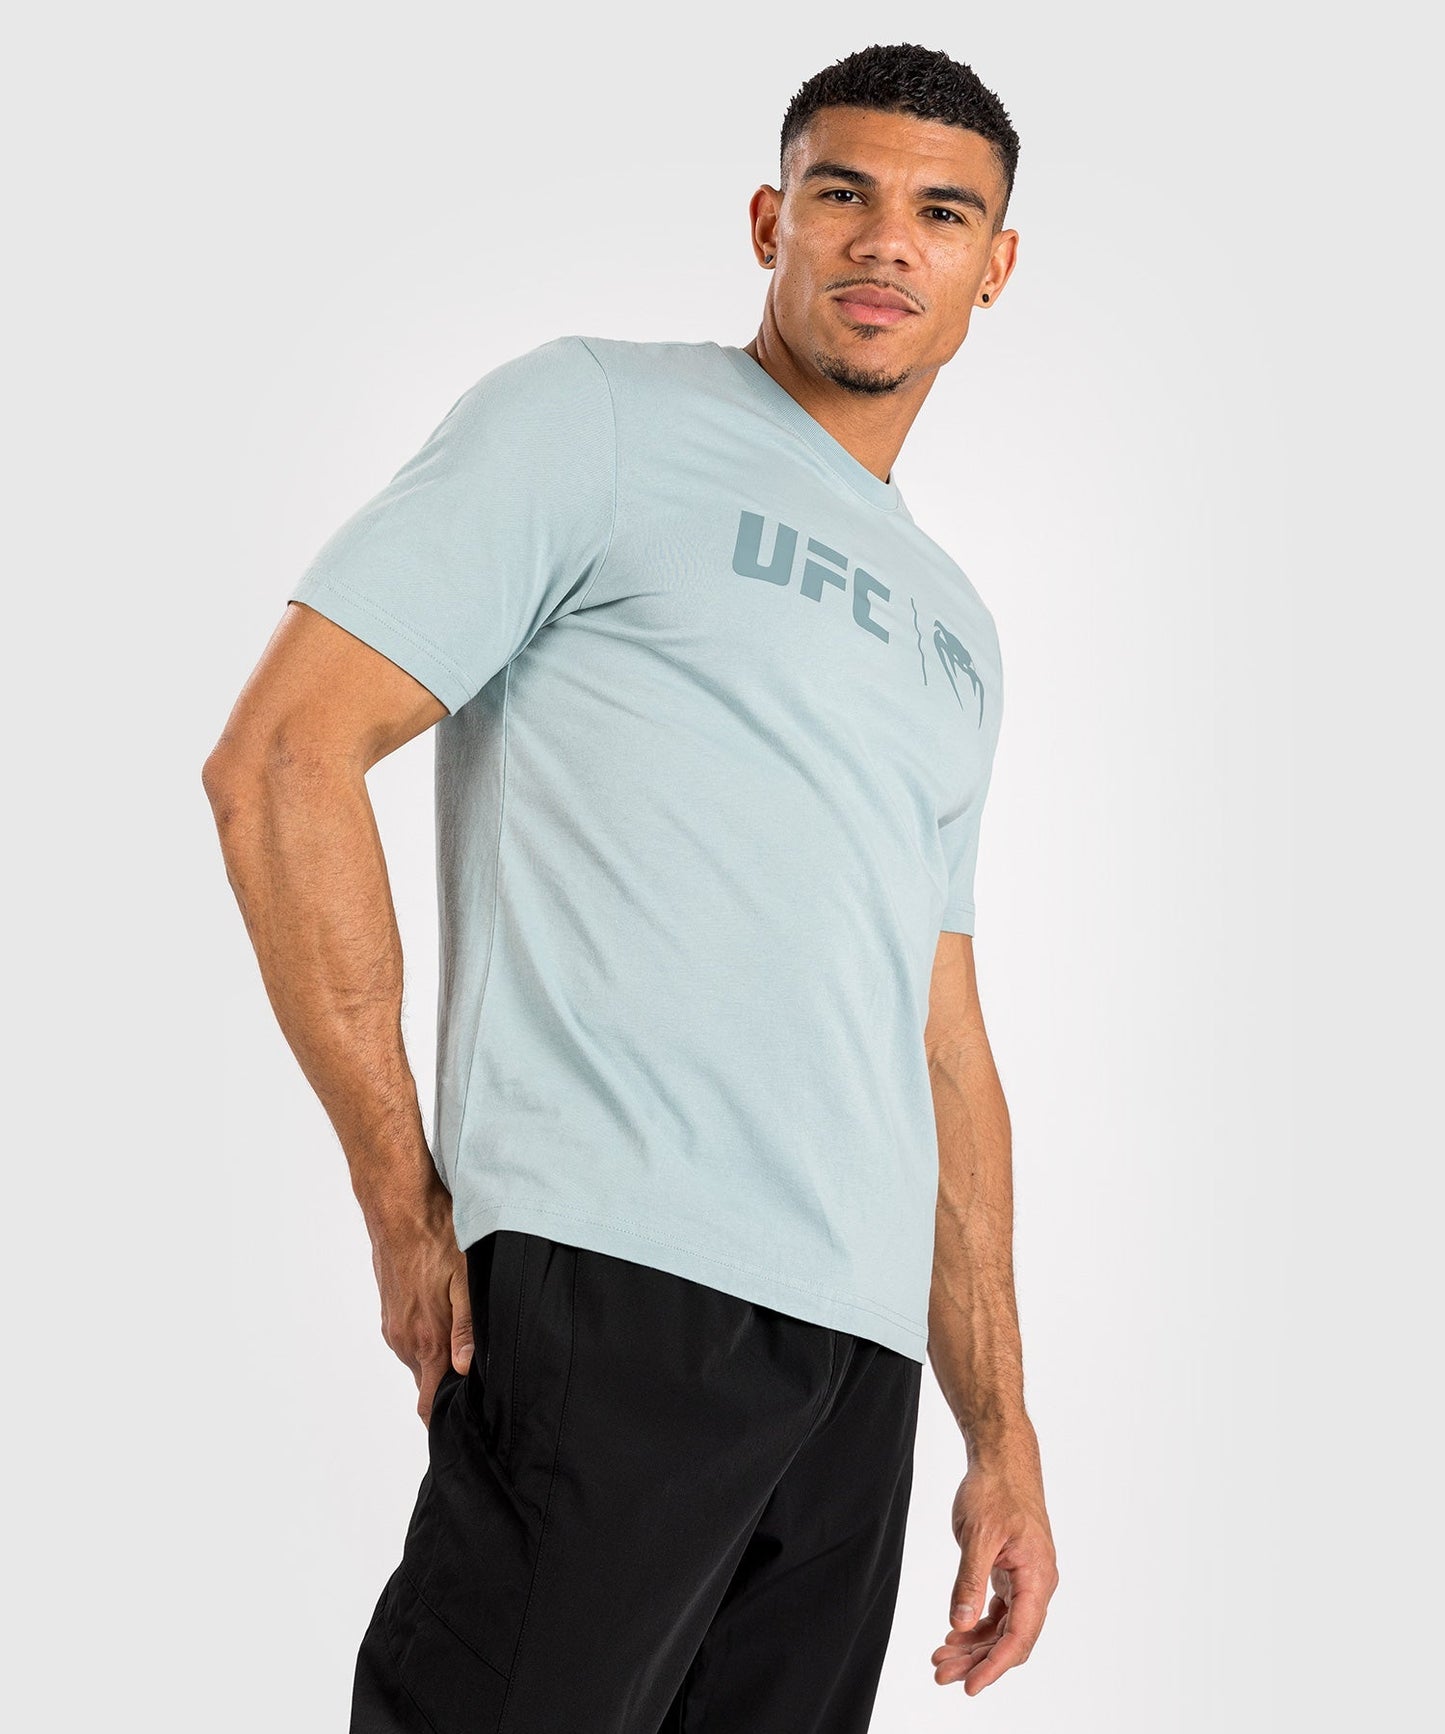 UFC Venum Classic T-shirt - Oceaanblauw